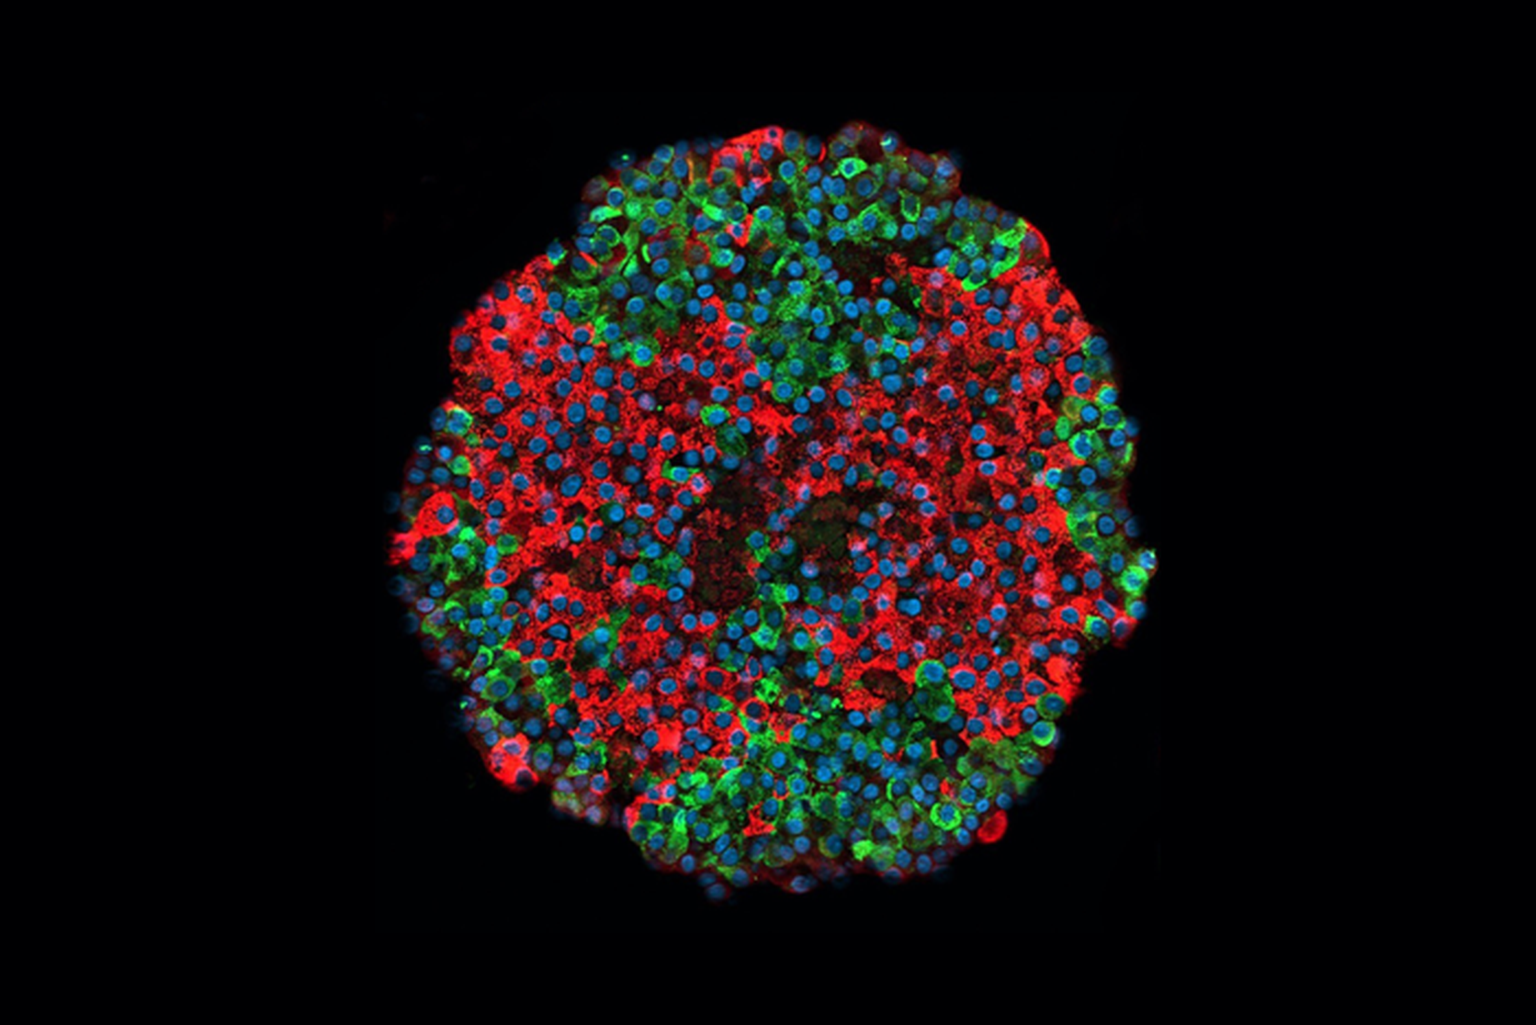 Pildil on tüvirakkudest toodetud pankrease saareke. Insuliini tootvad rakud on märgitud punasega ja glükagooni tootvad rakud rohelisega.